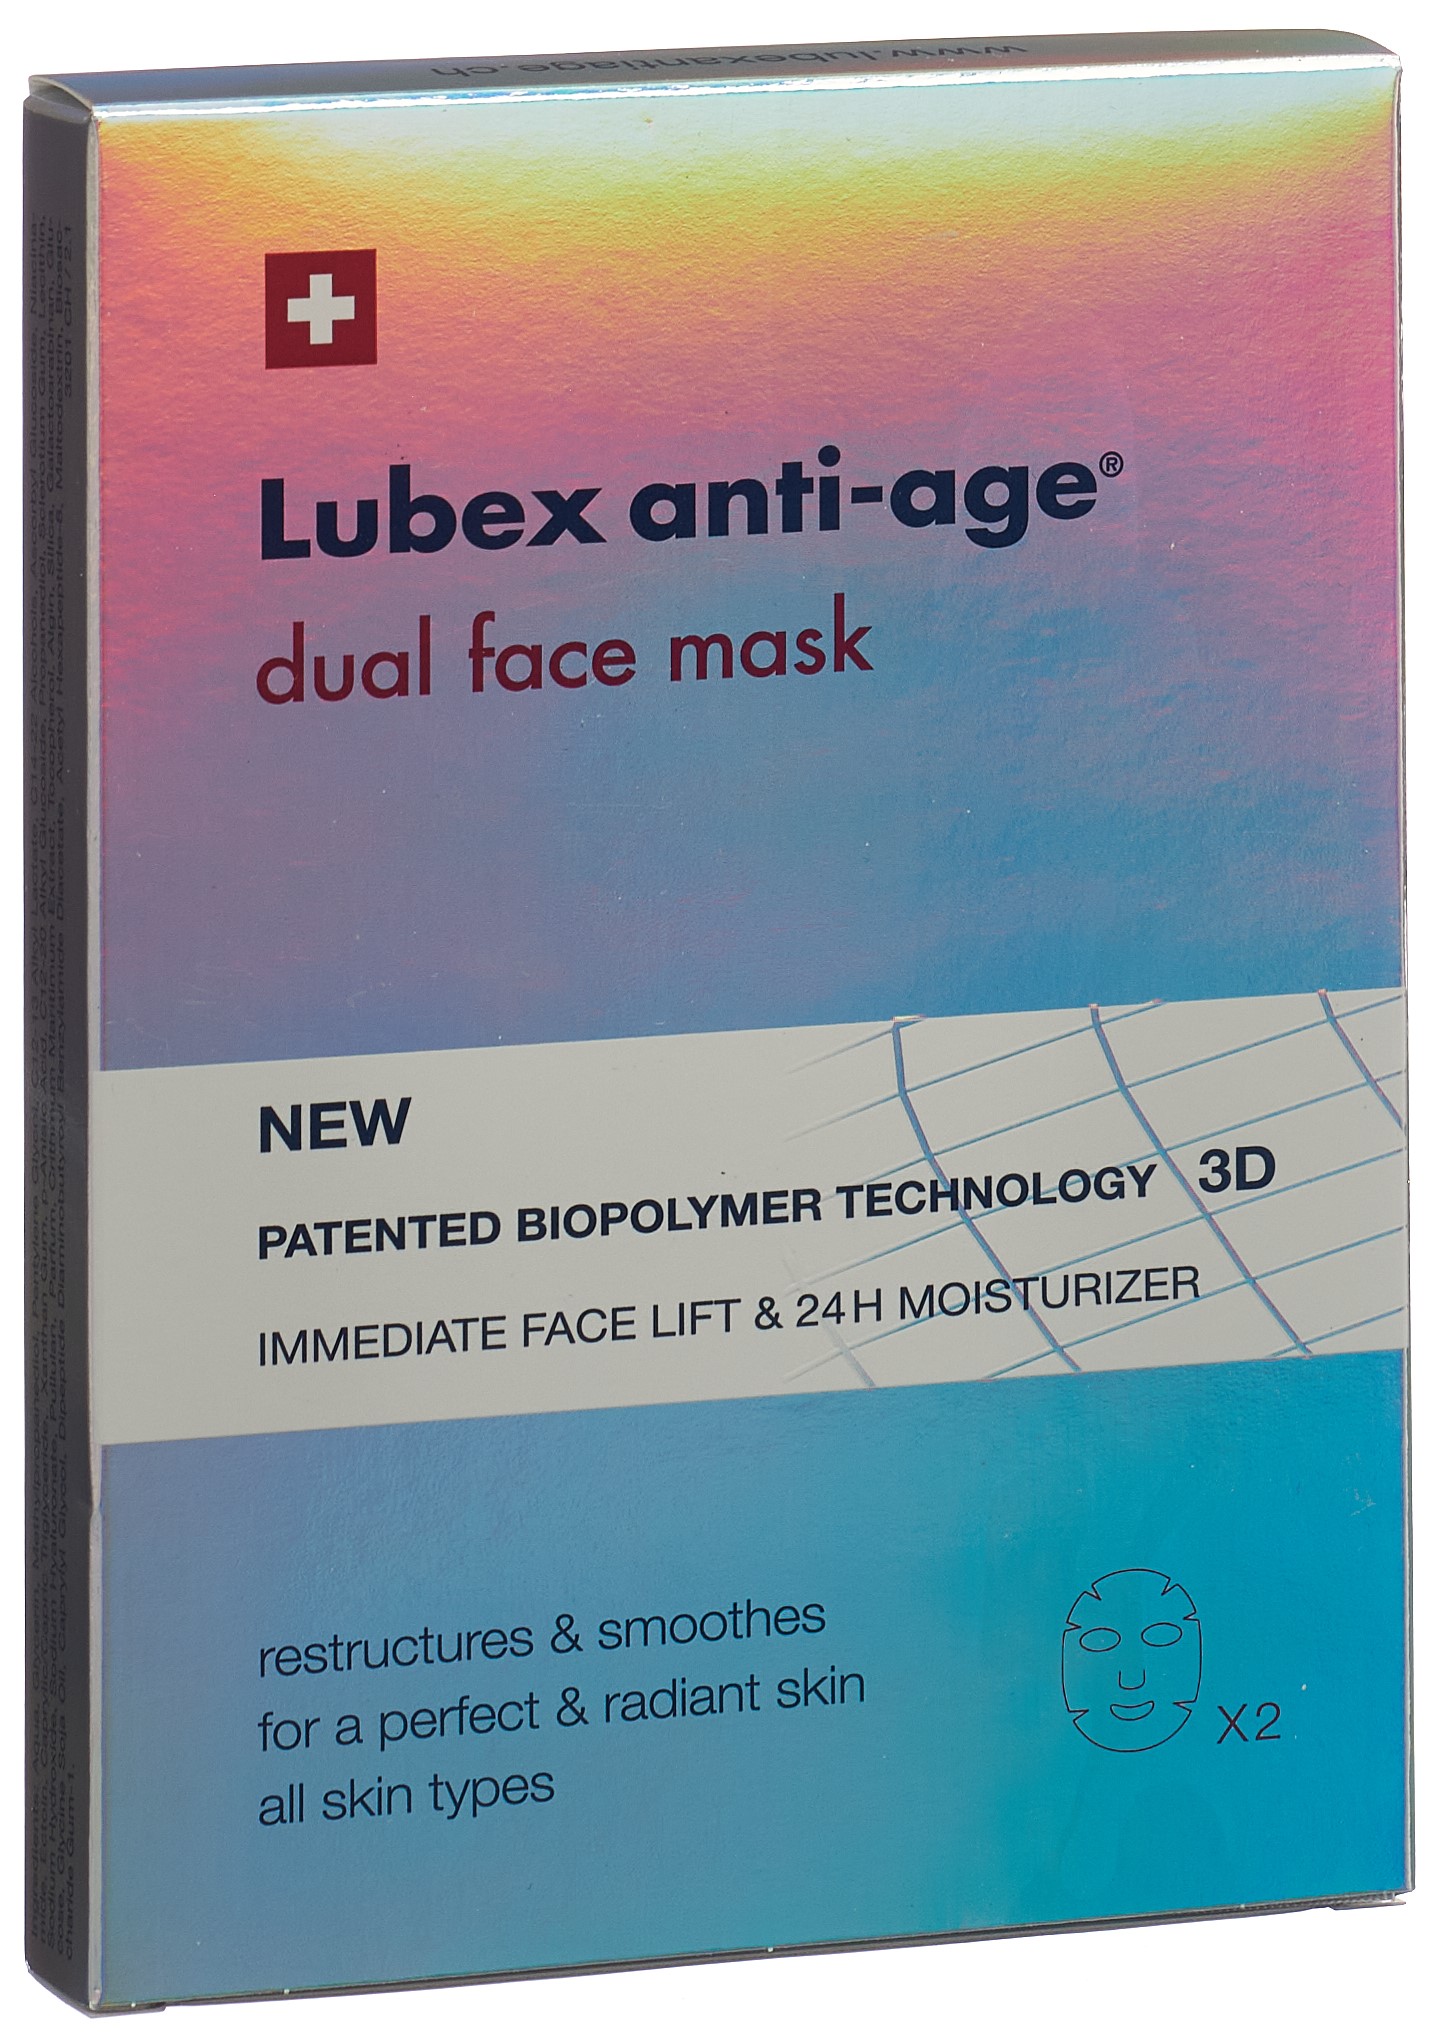 LUBEX ANTI-AGE dual face mask Btl 2 Stk